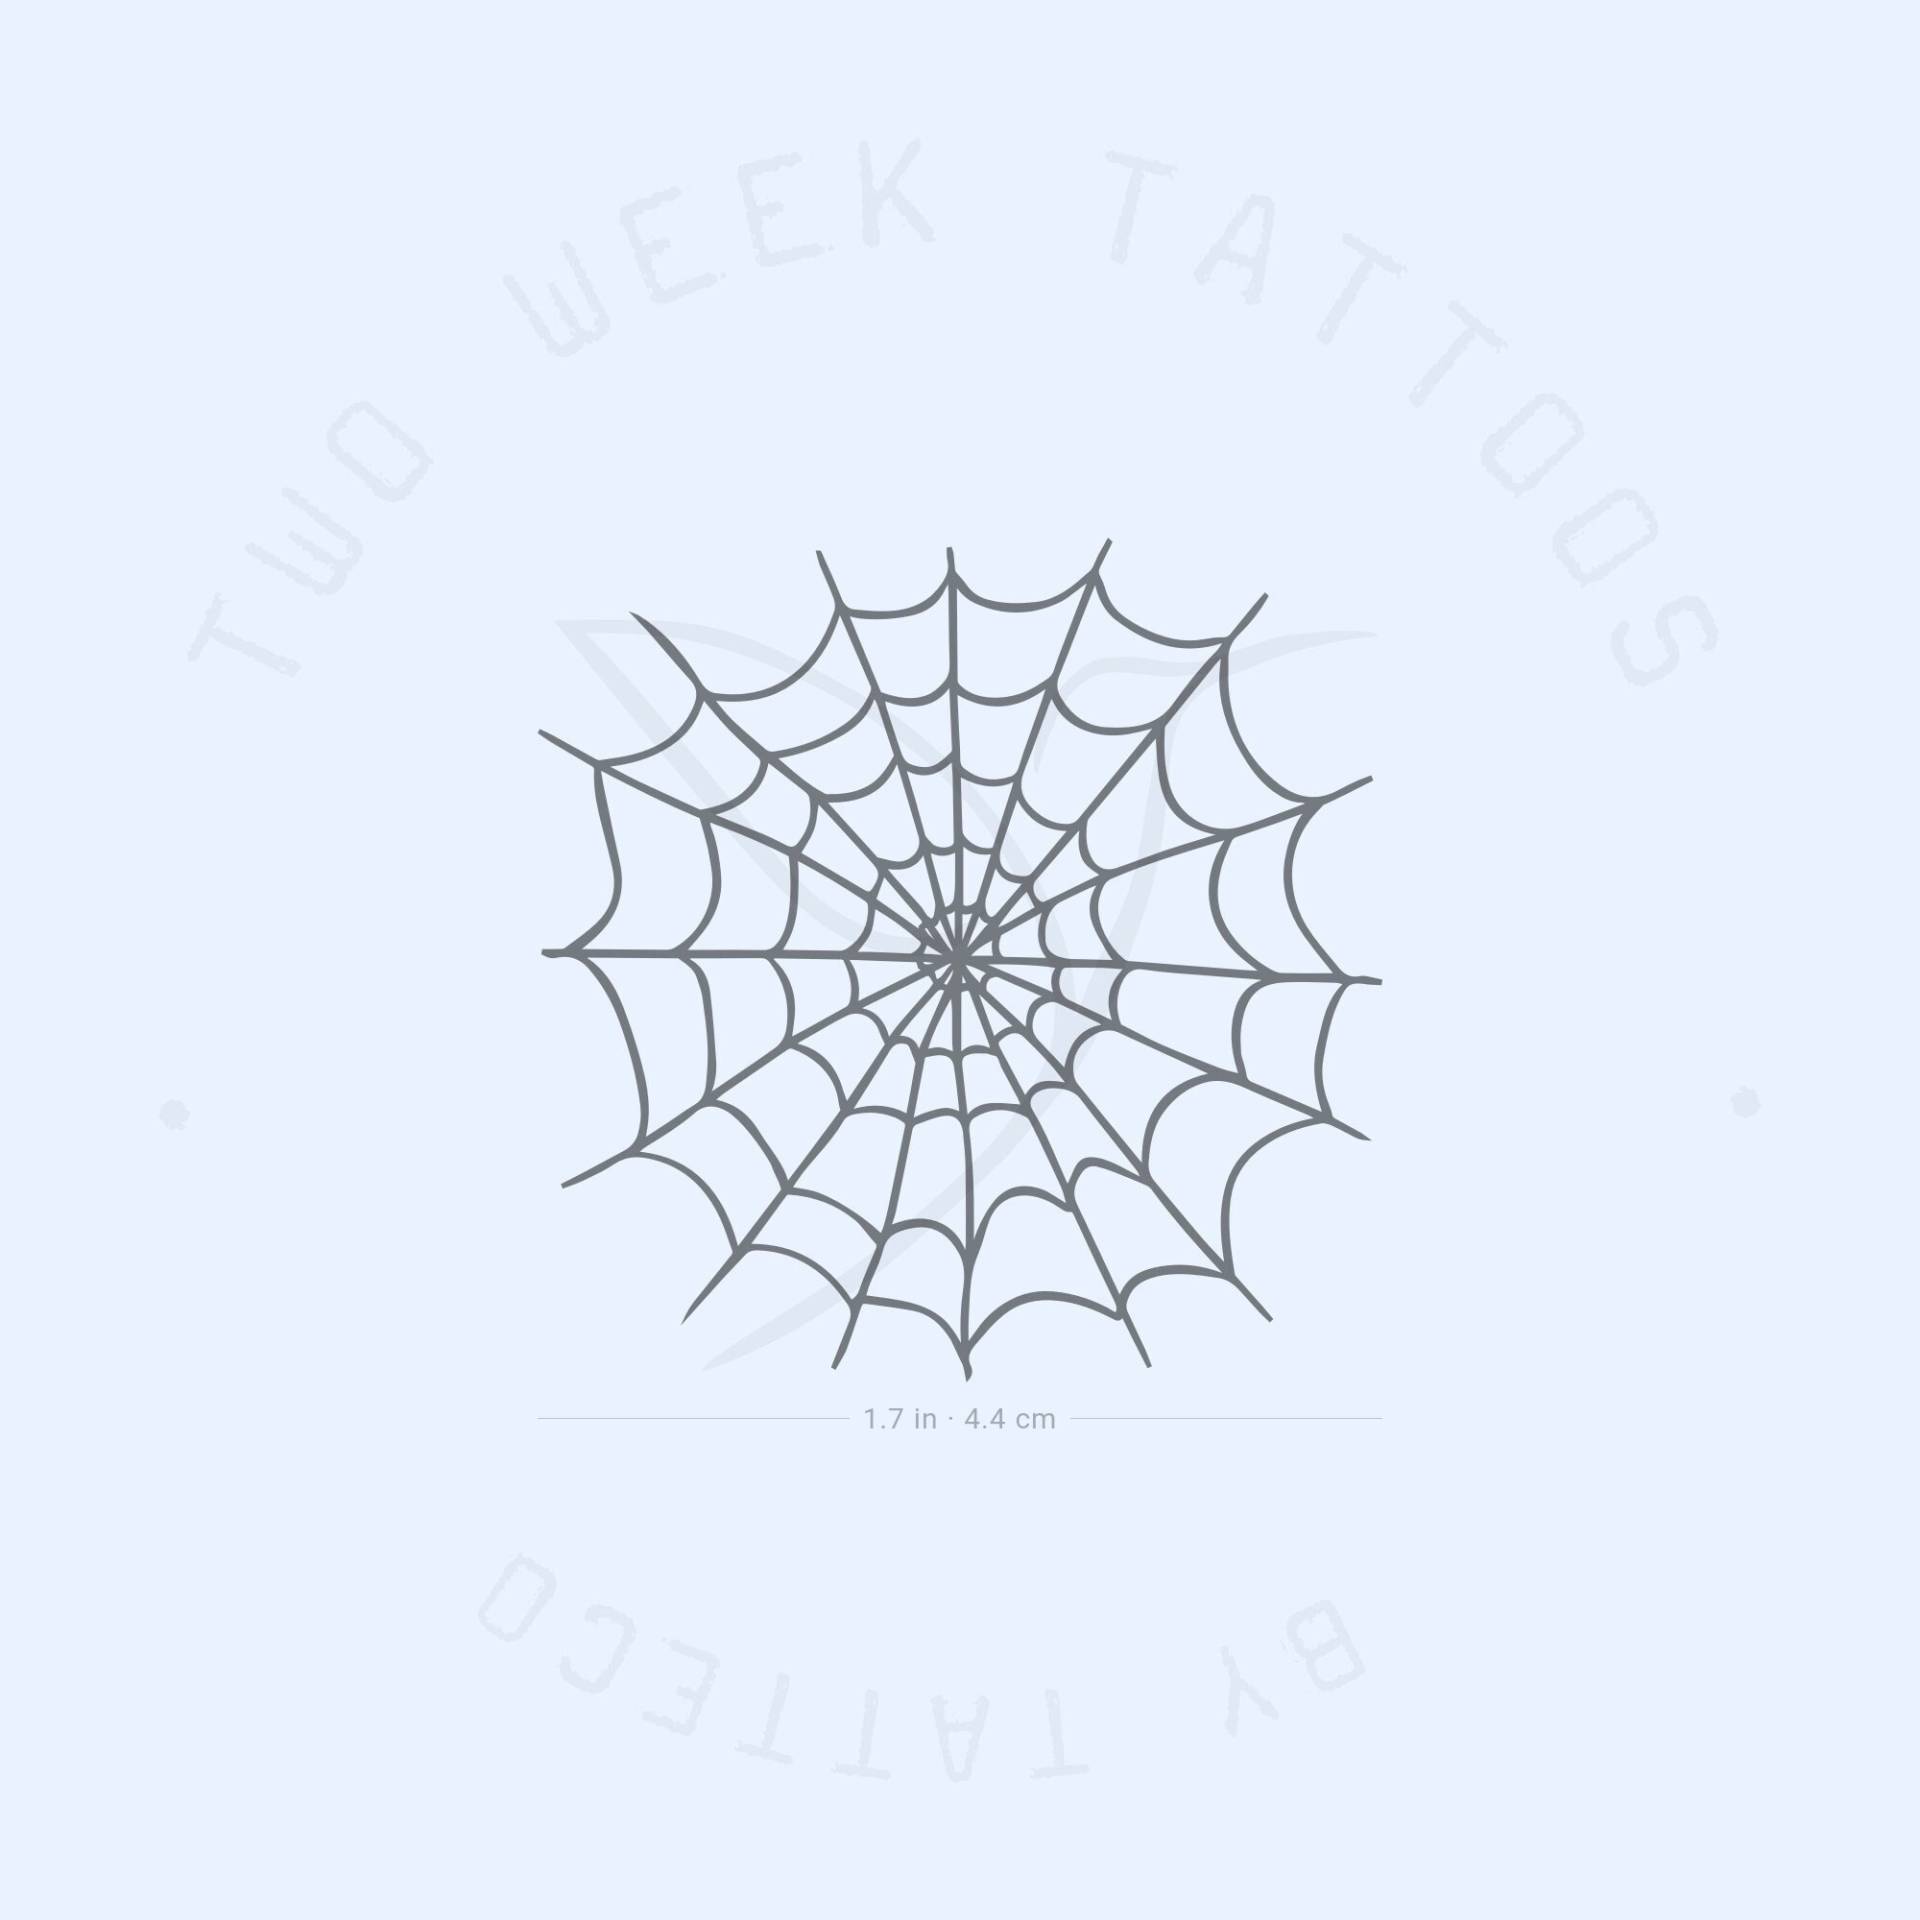 Spinnennetz Semi-Permanent Tattoo | 2Er Set von Etsy - twoweektattoos